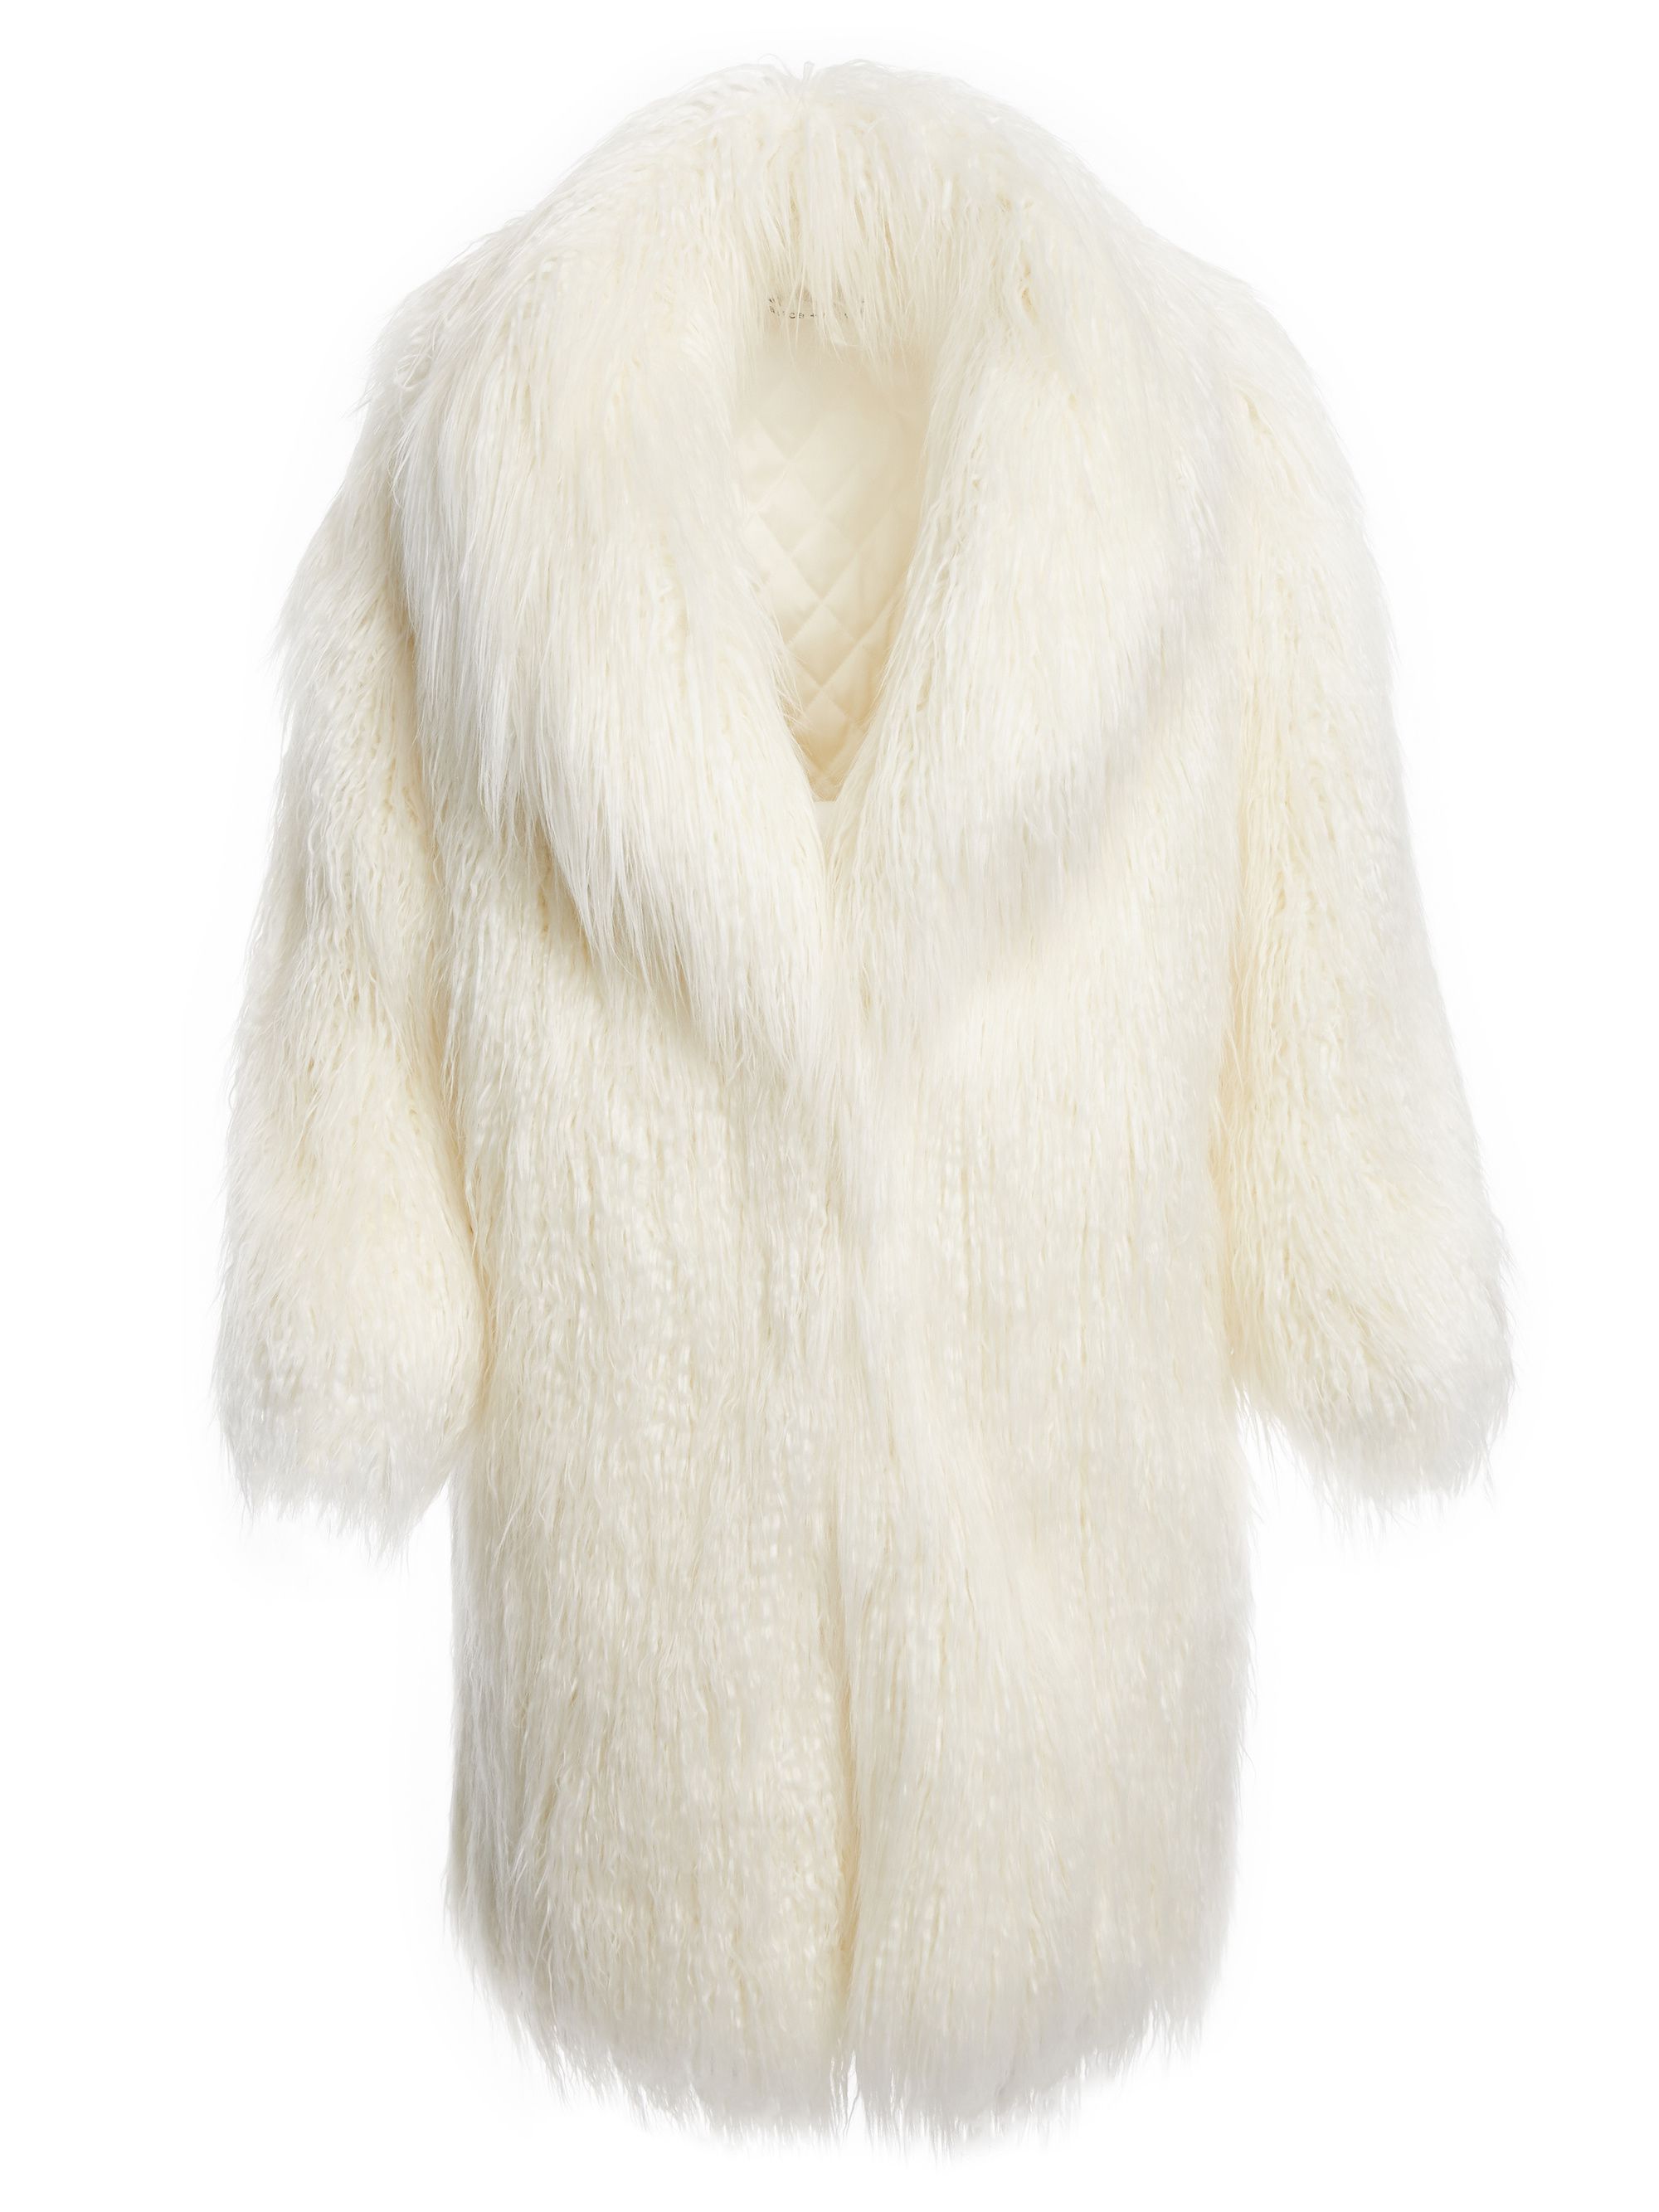 h&m white fur coat